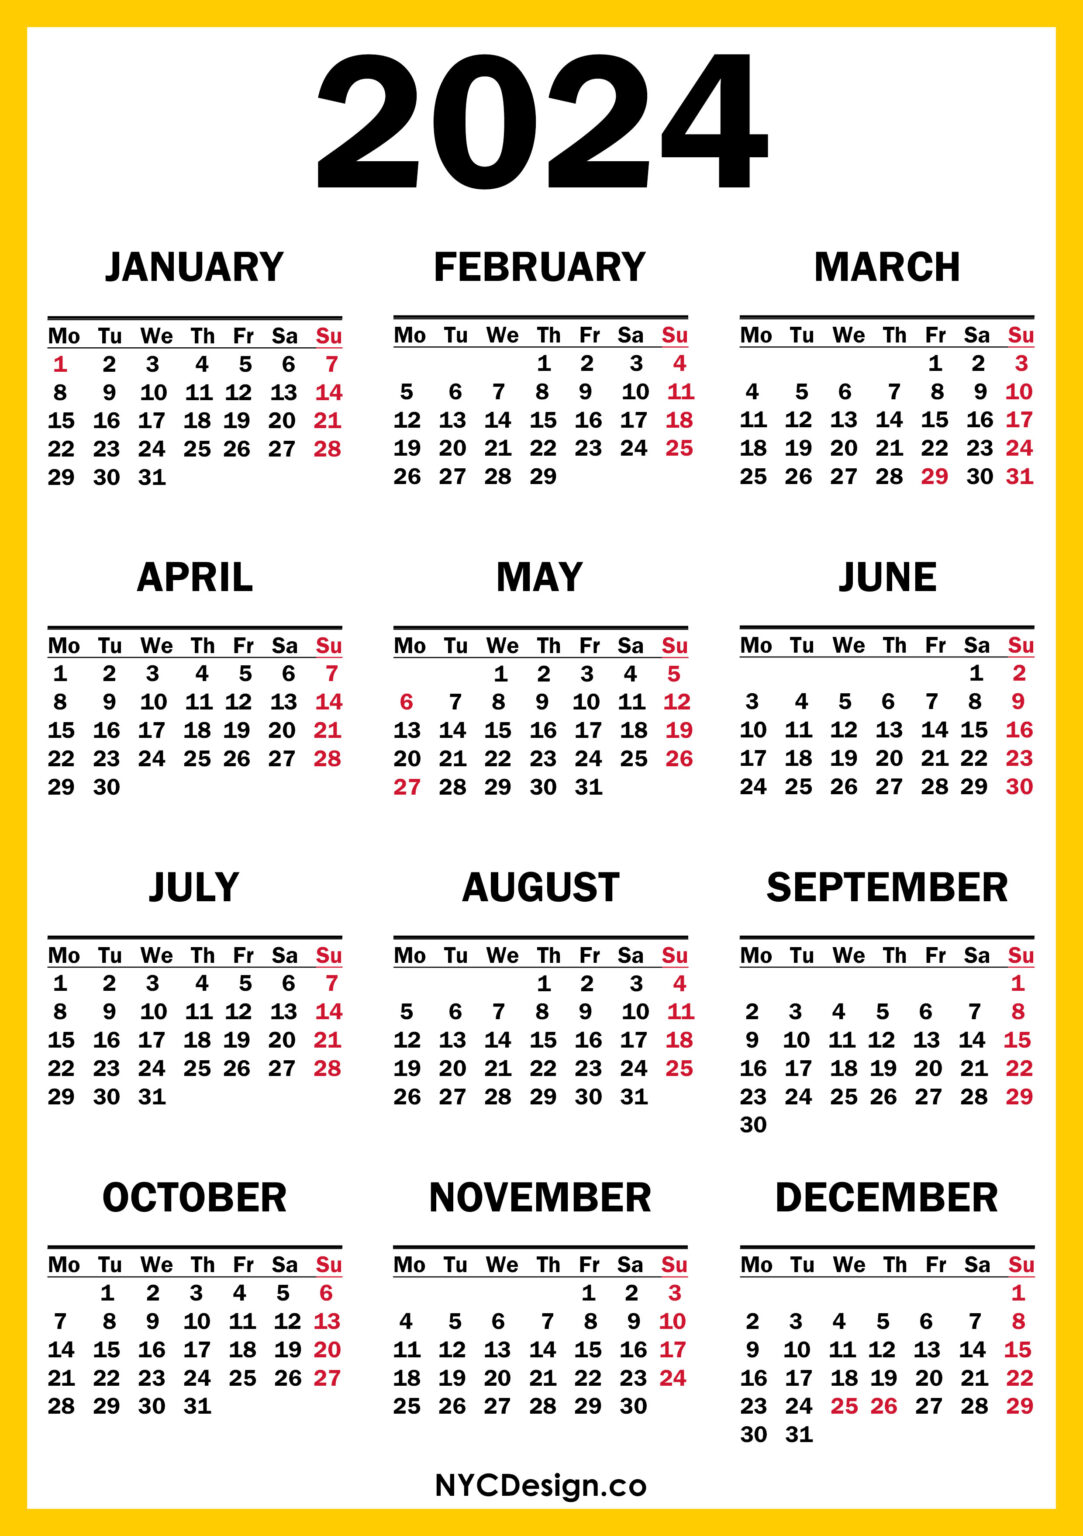 suu calendar 2024 martin printable calendars calendar 2023 ontario